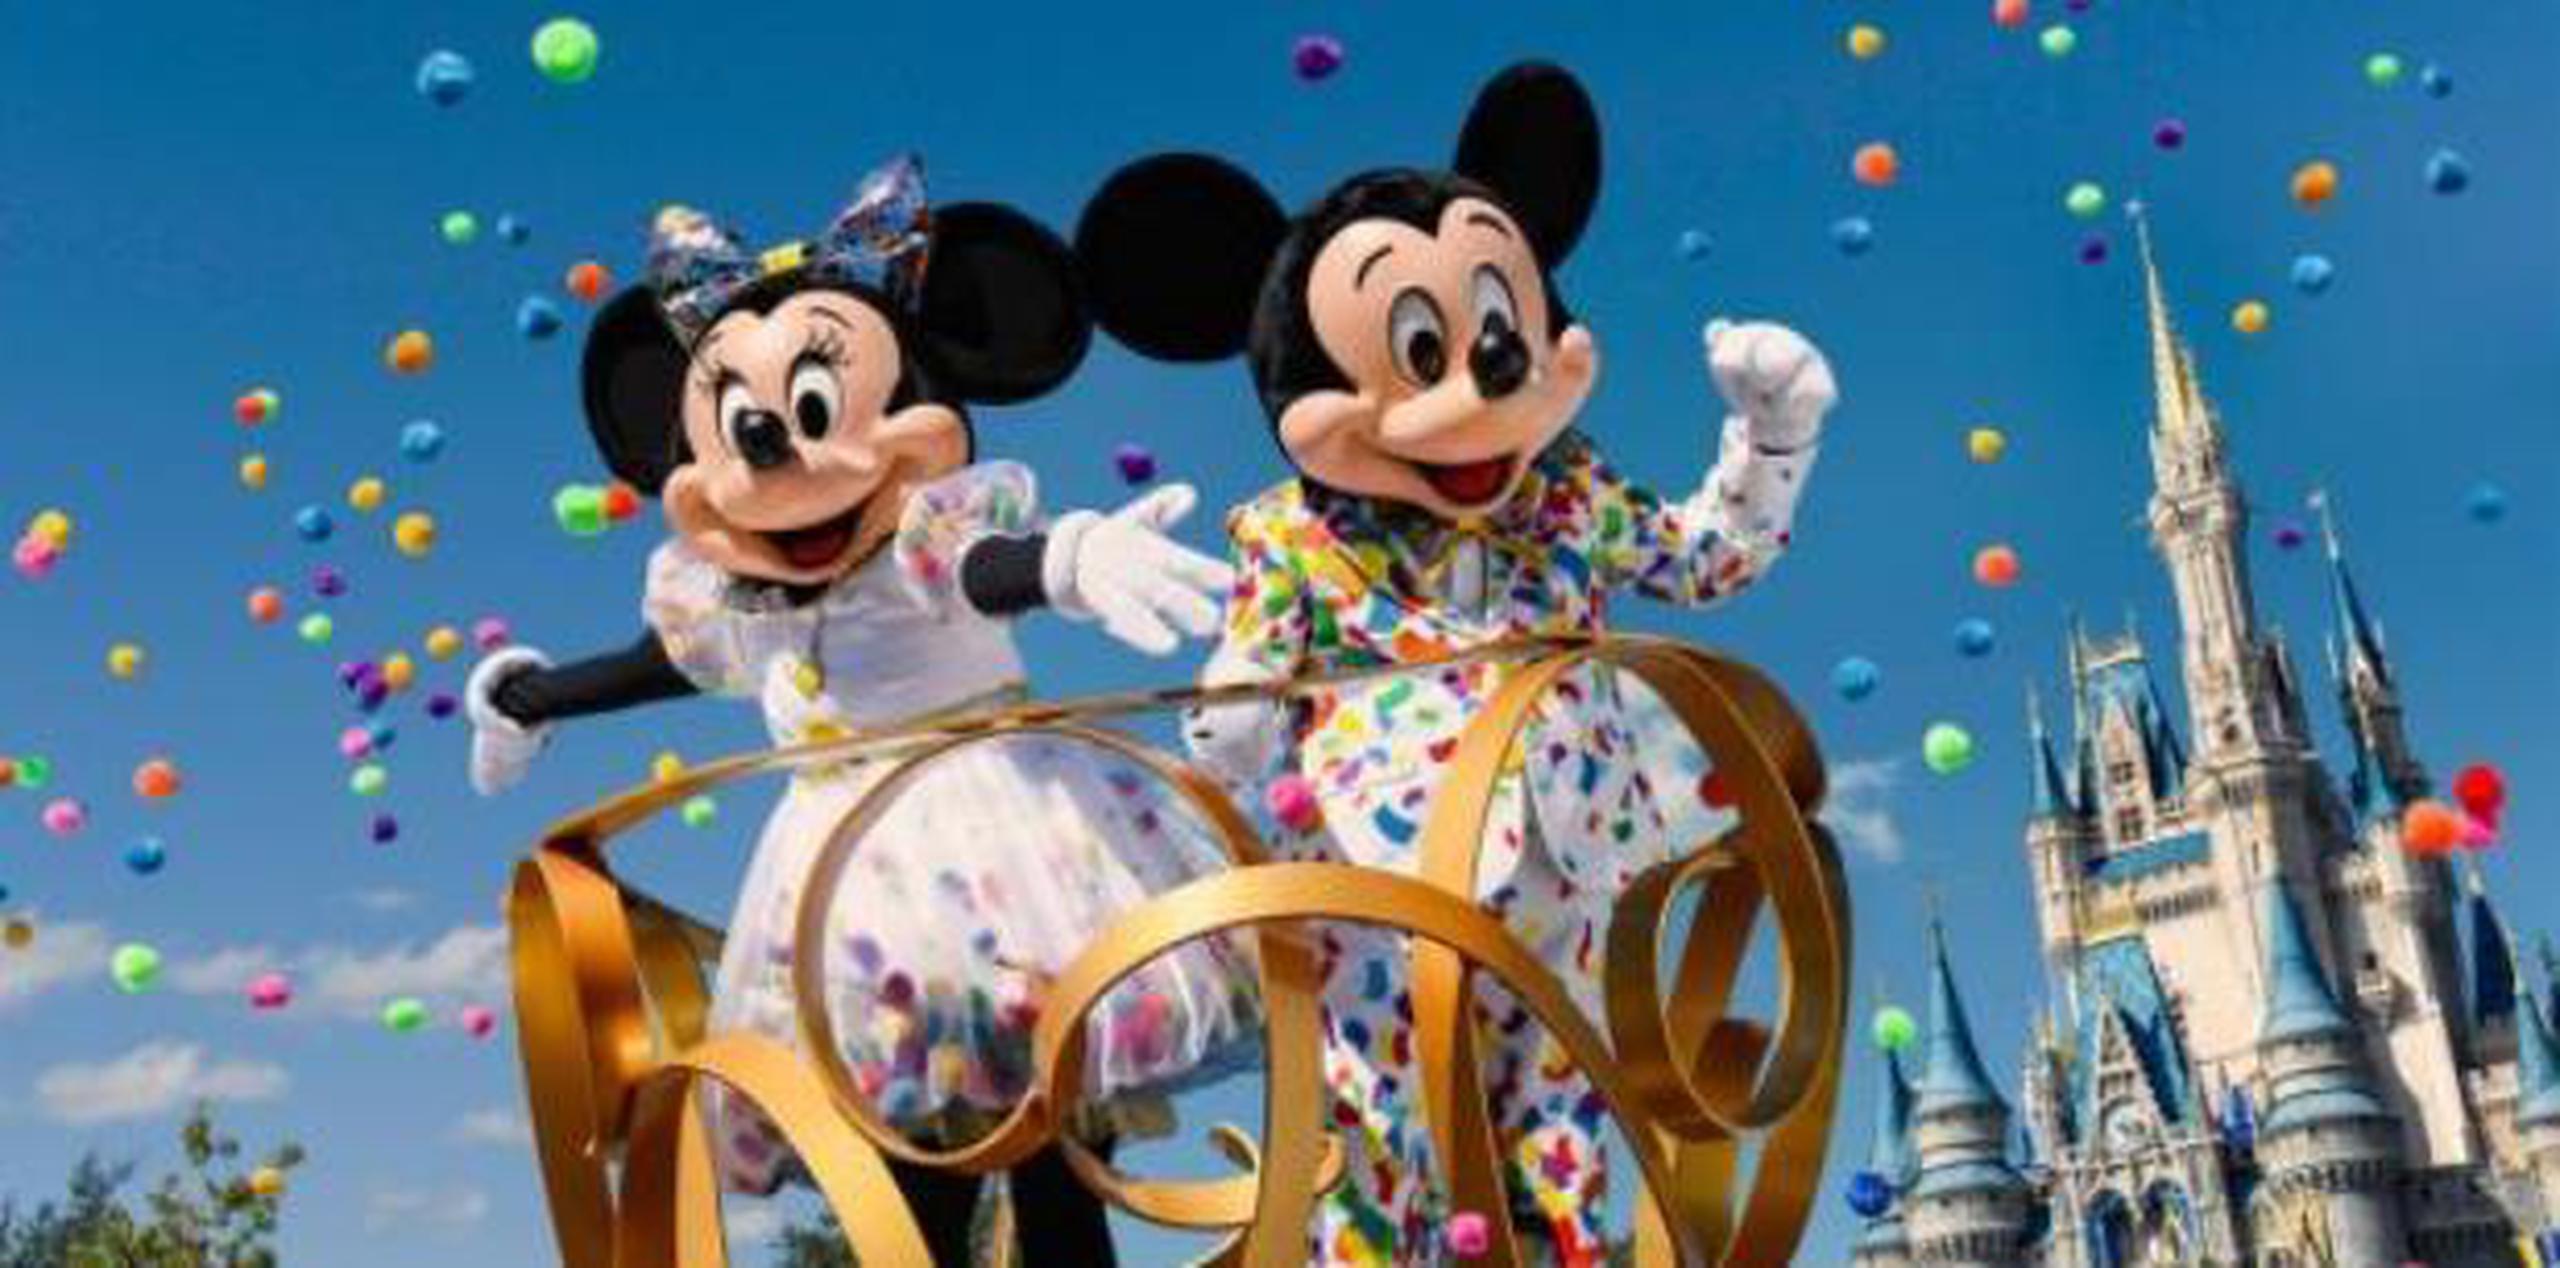 Mickey traspasó las pantalla y se extendió a parques temáticos, cruceros, hoteles, ropa, juguetes y otros productos de "merchandising", generando cada año miles de millones de dólares. (Disney)